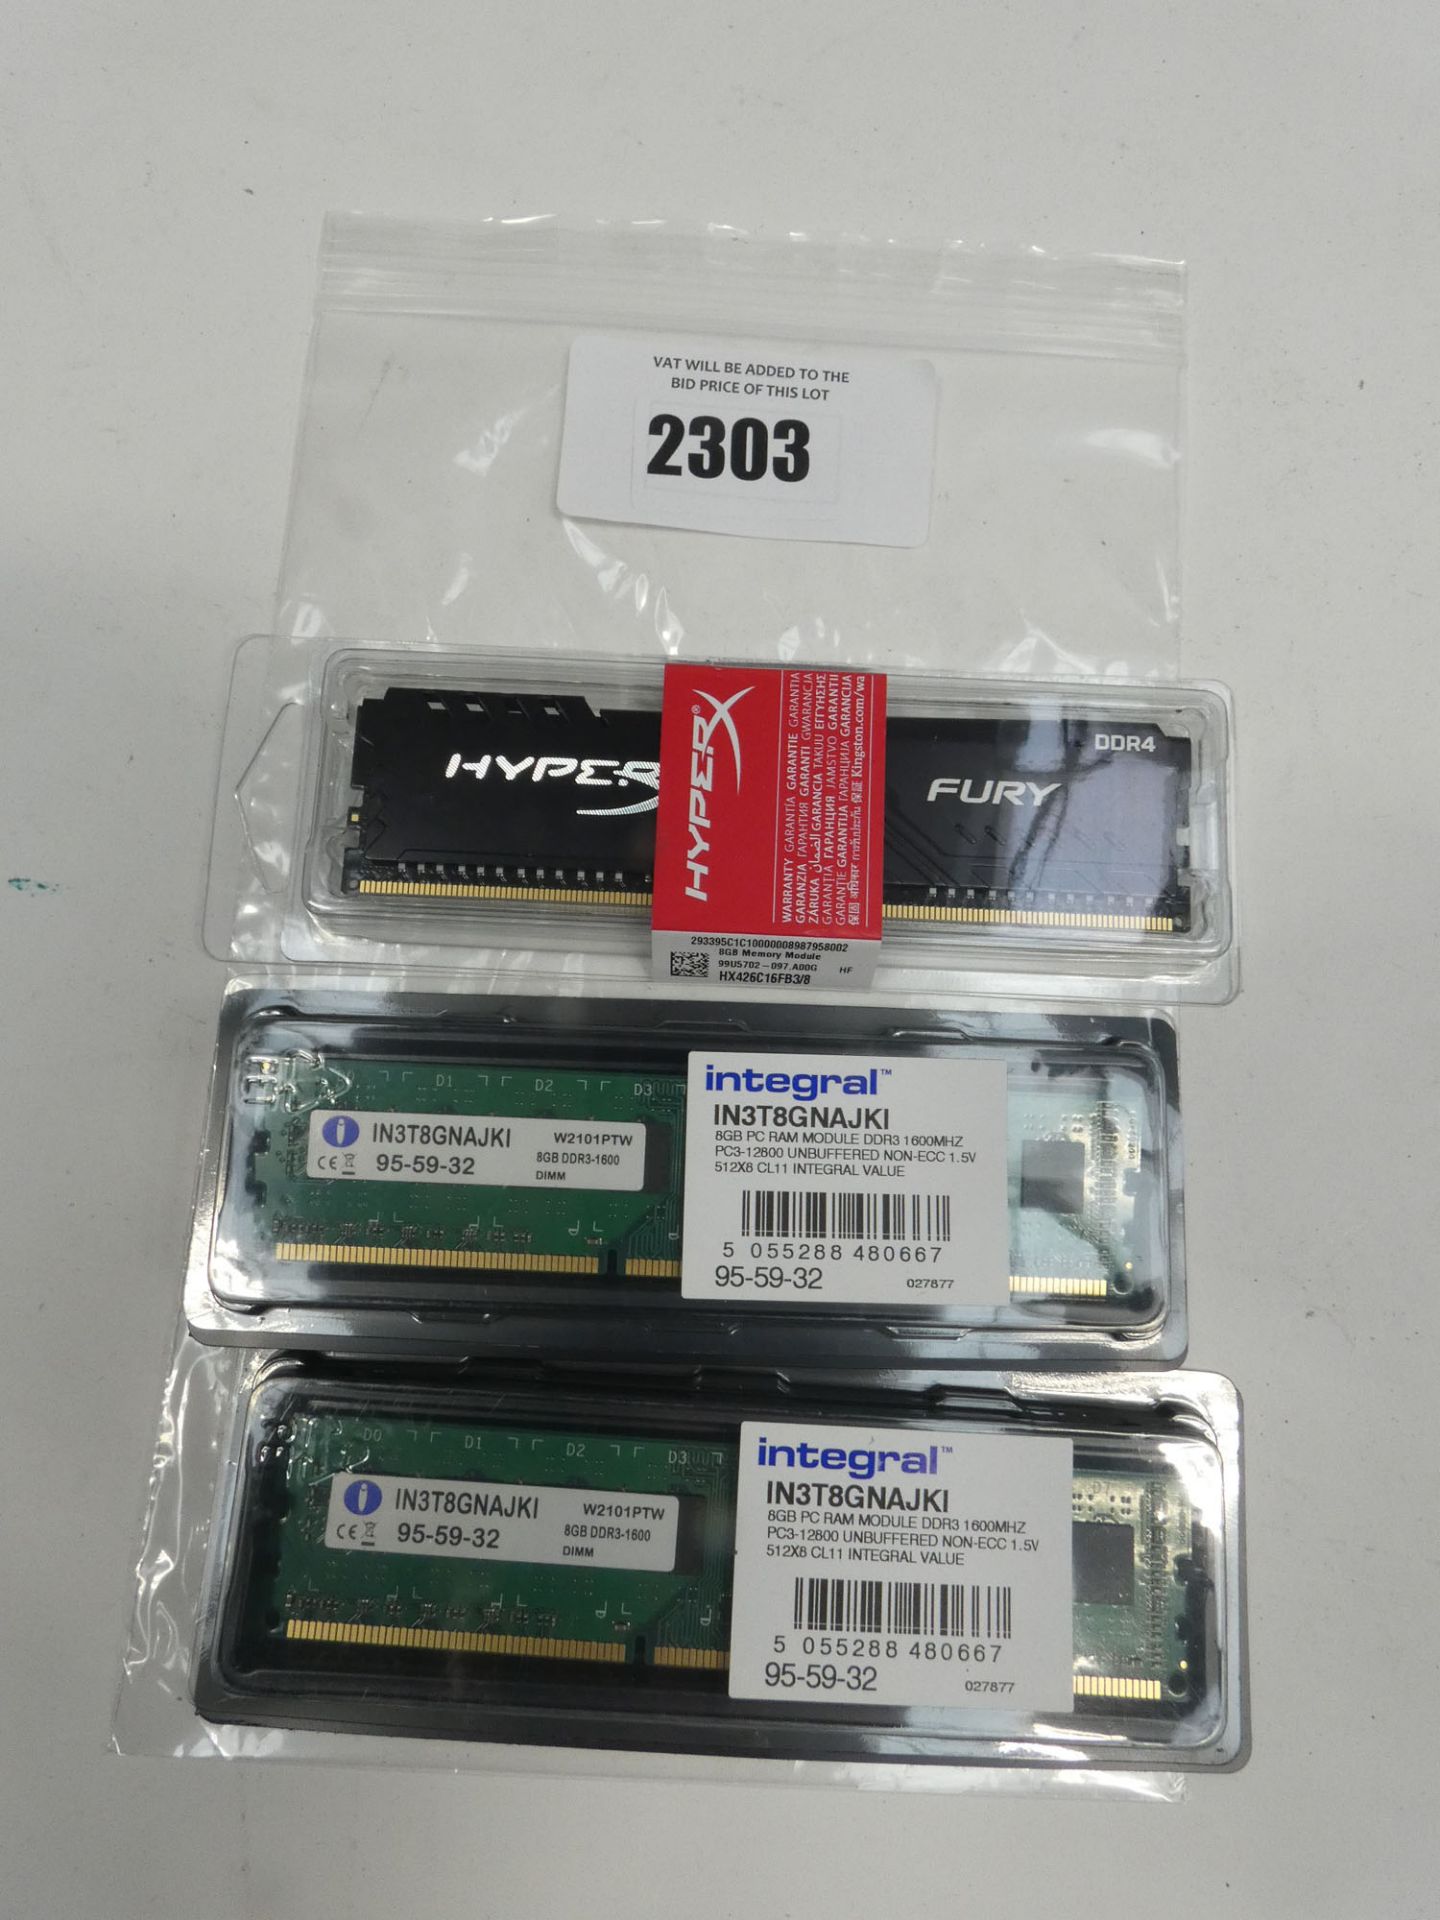 HyperX Fury DDR4 8GB RAM and 2x Integral DDR3 8GB RAMs